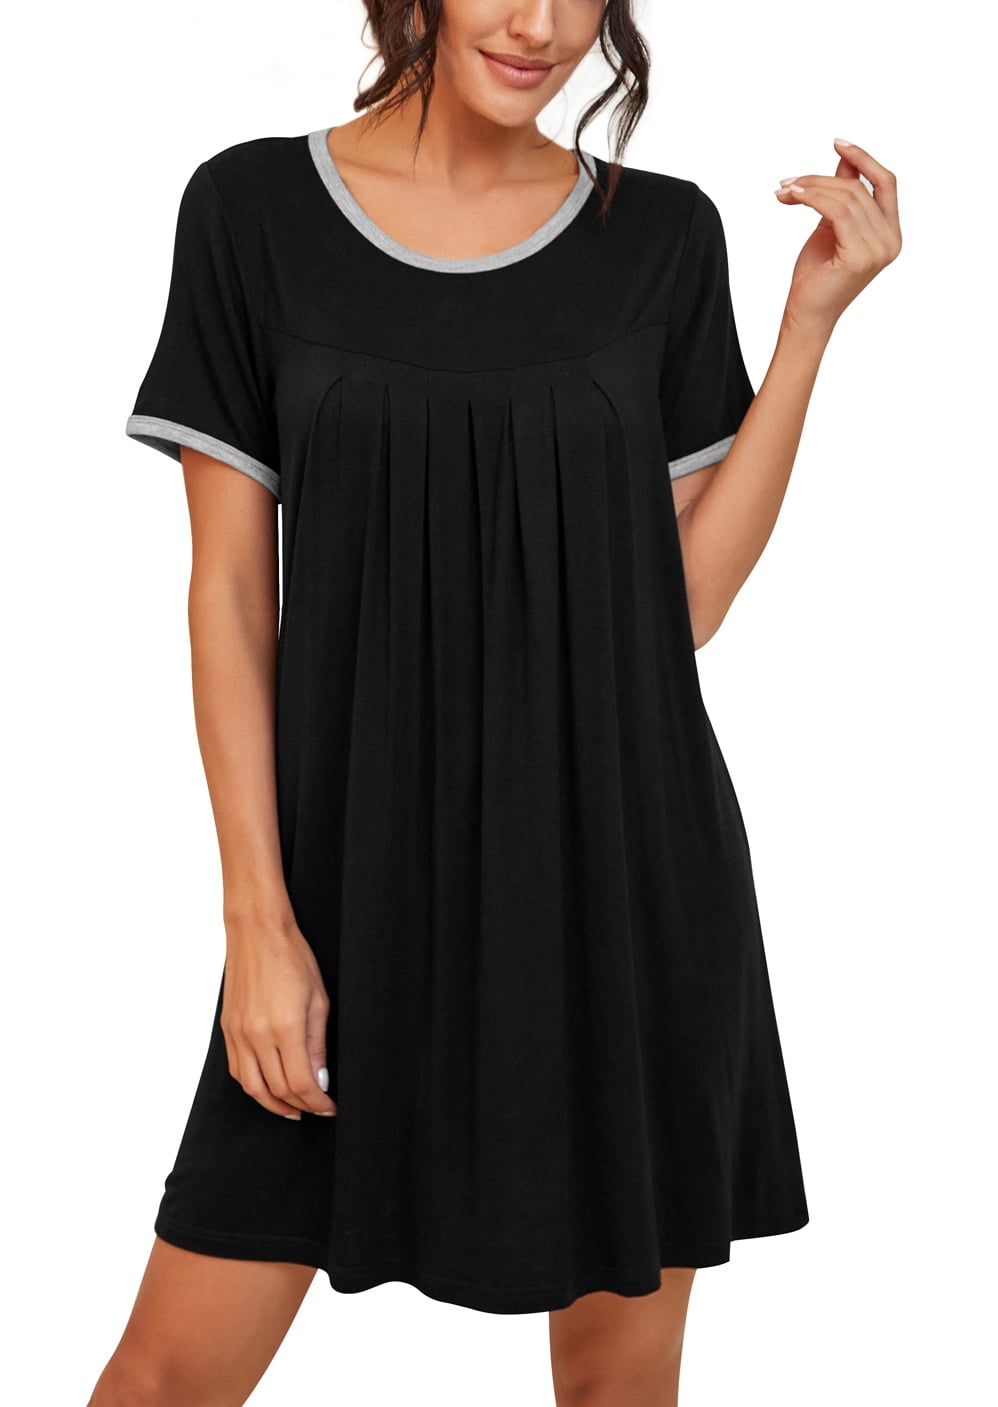 Women's Nightgown with Built in Bra Chemise Sleepwear Full Slips Nightwear  Soft Lingerie 